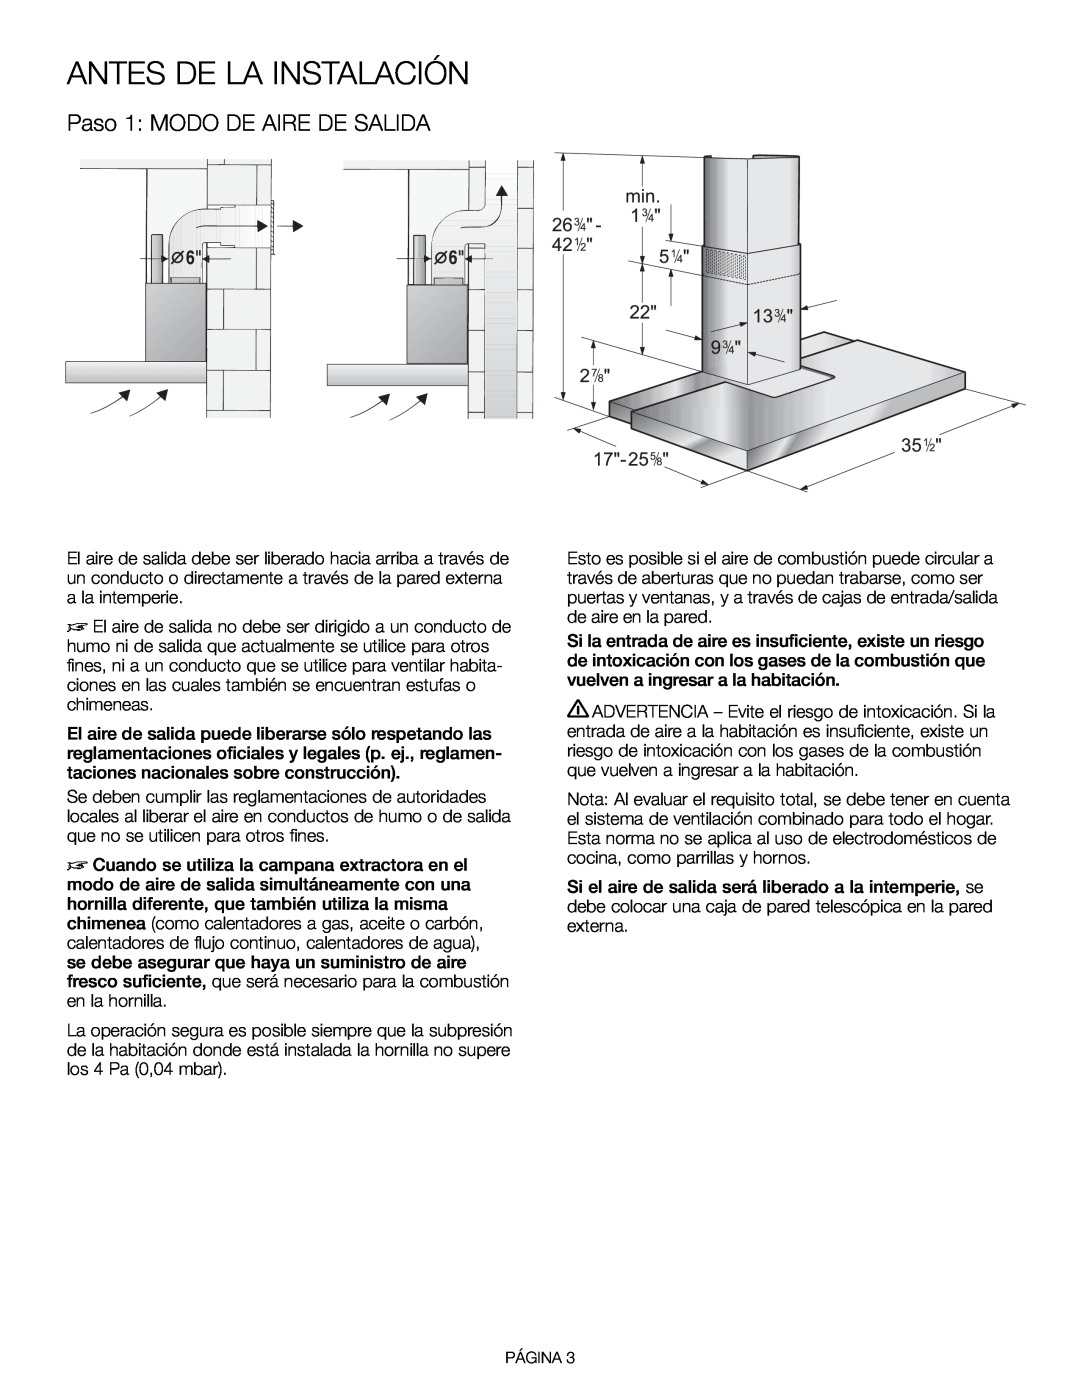 Thermador HDDW36FS installation manual Antes De La Instalación, Paso 1 MODO DE AIRE DE SALIDA 